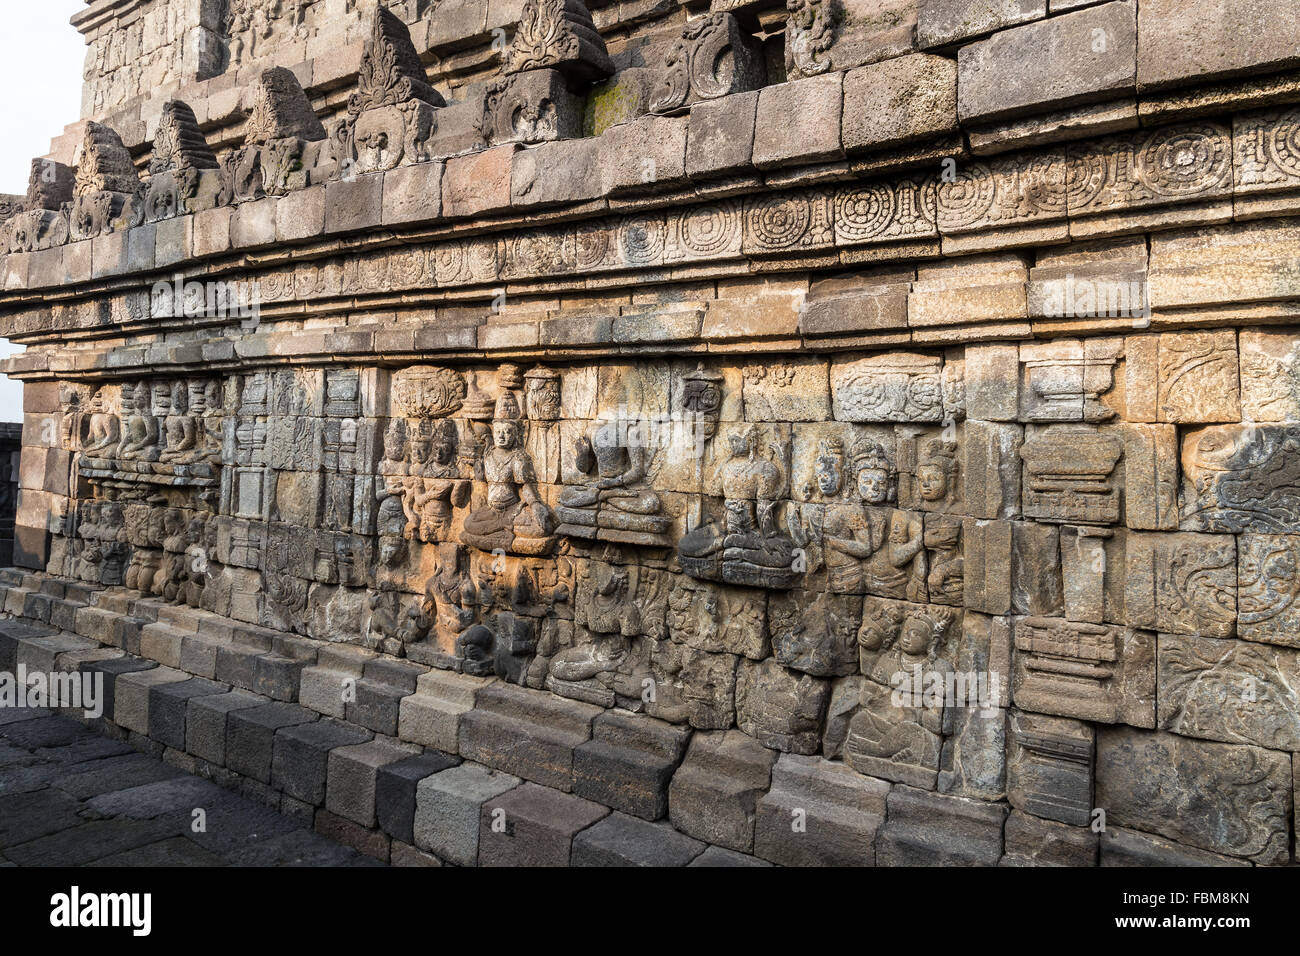 Panneaux de secours du temple de Borobudur en Indonésie. Borobudur est le plus grand temple bouddhiste du monde. Banque D'Images